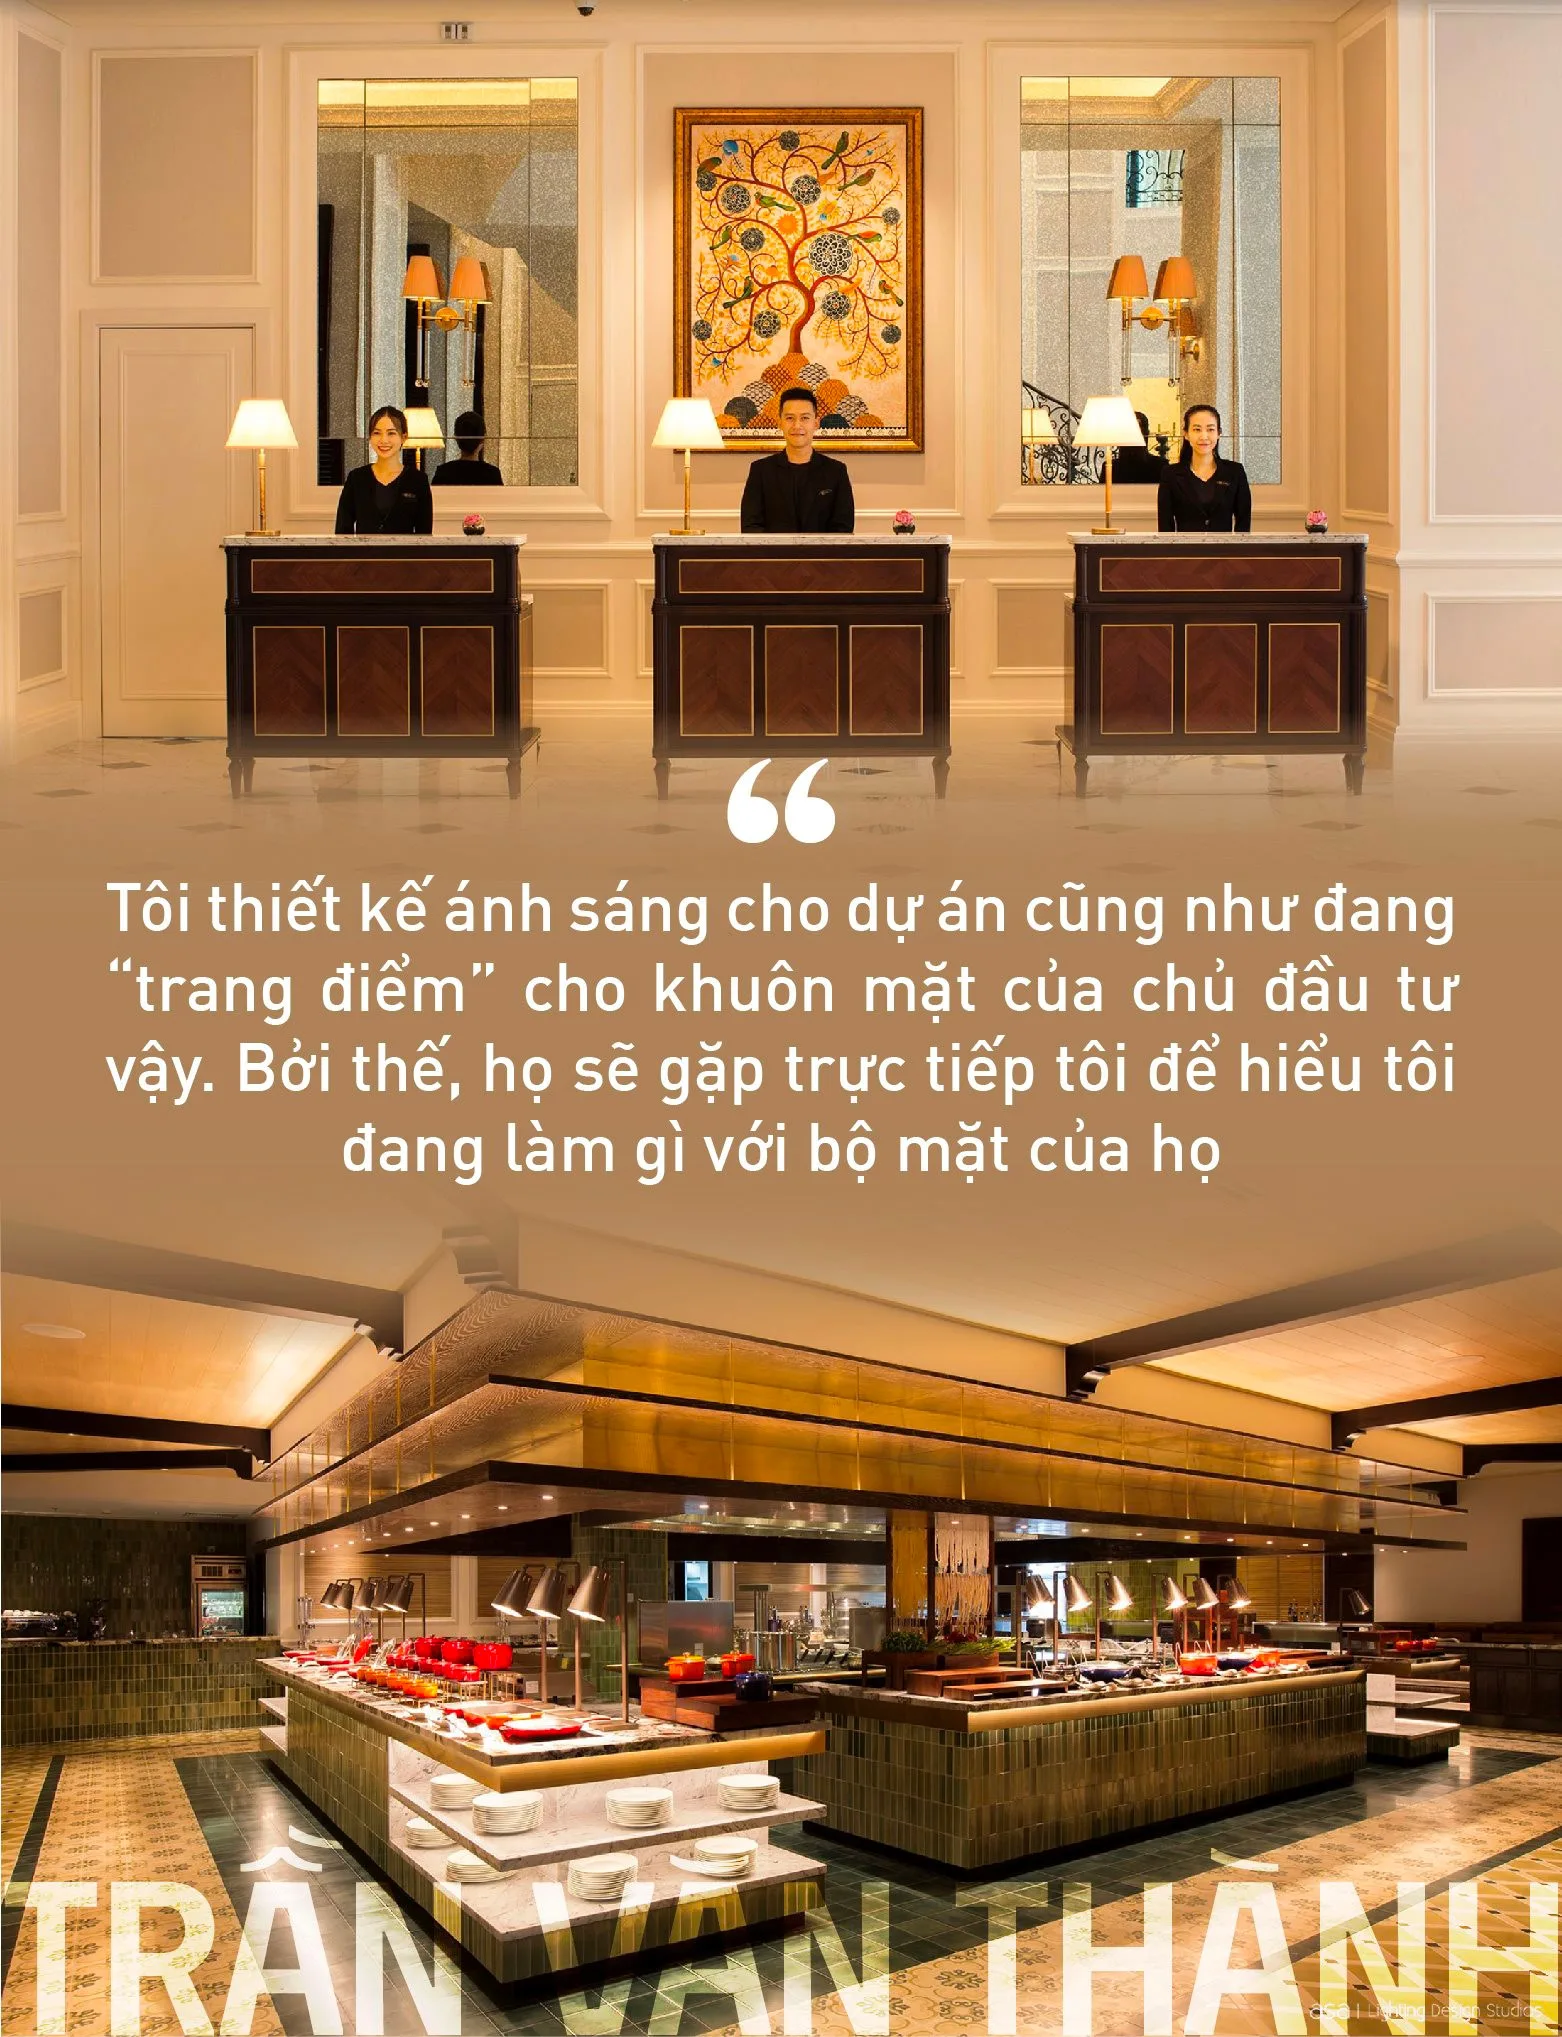 Cố vấn chiếu sáng cho các “ông lớn khách sạn” Trần Văn Thành: Thiết kế ánh sáng là “trang điểm” công trình mà thù lao được trả bằng một thứ không phải tiền bạc - Ảnh 4.